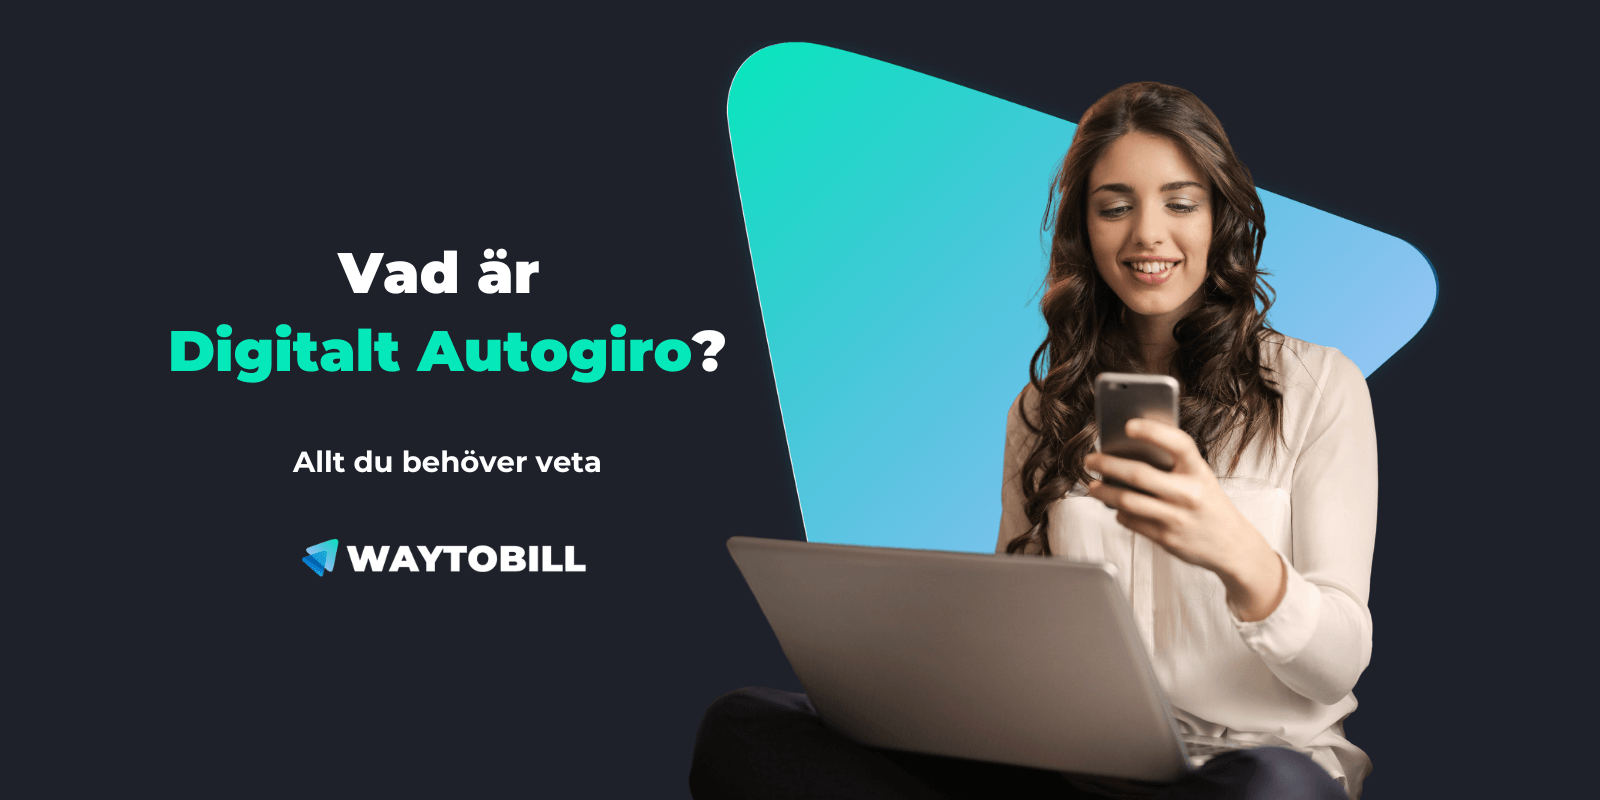 Vad är Digitalt Autogiro? Autogiro Online: Allt du behöver veta